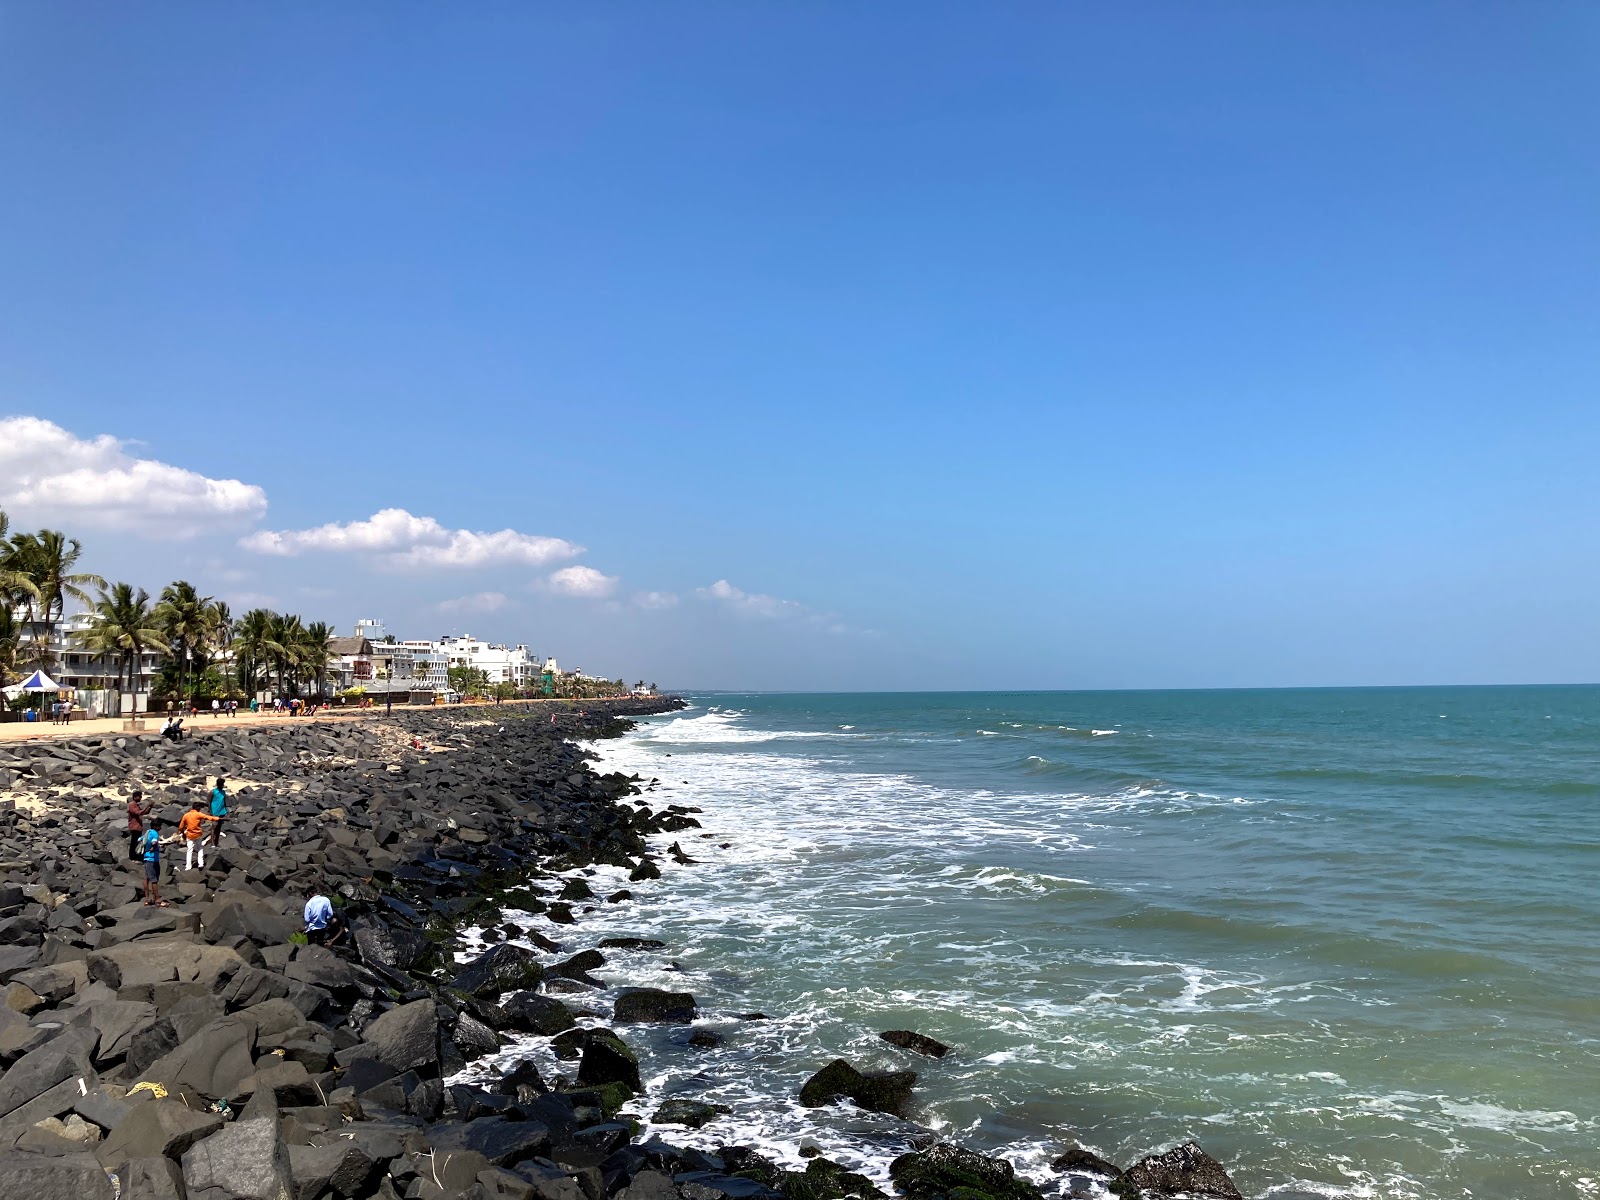 Pondicherry Beach'in fotoğrafı imkanlar alanı